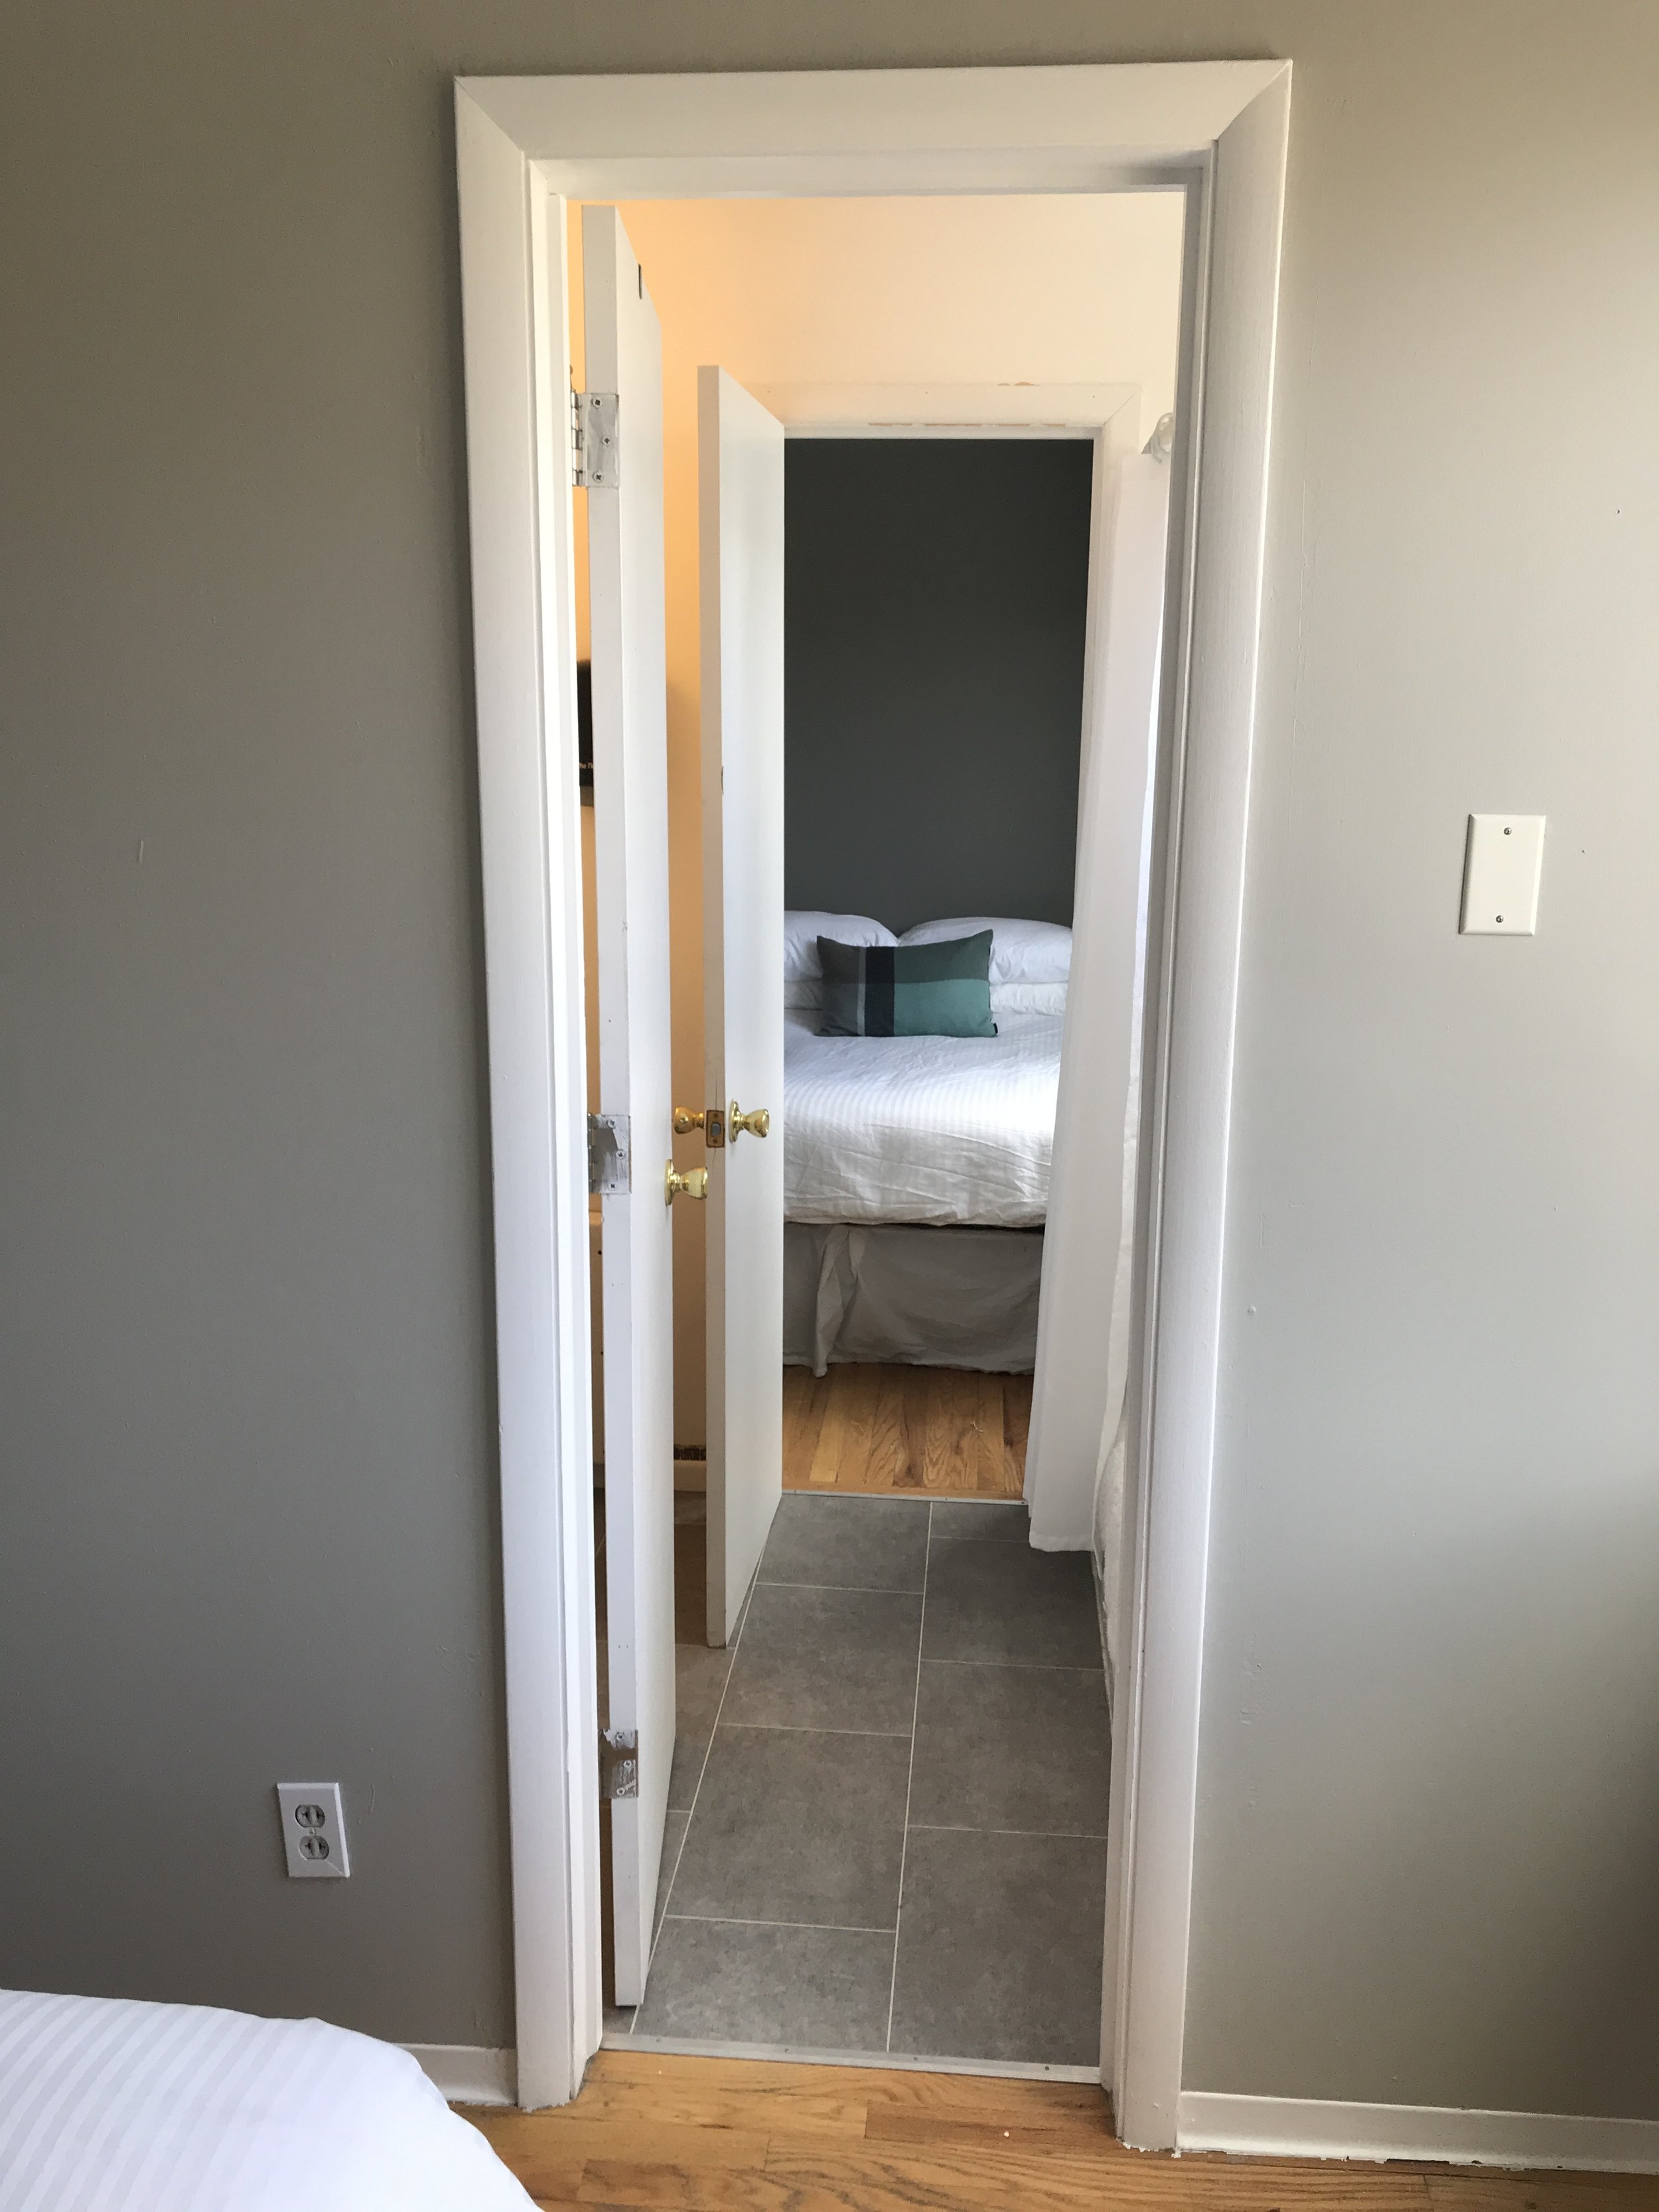 Room 1 Bathroom Access